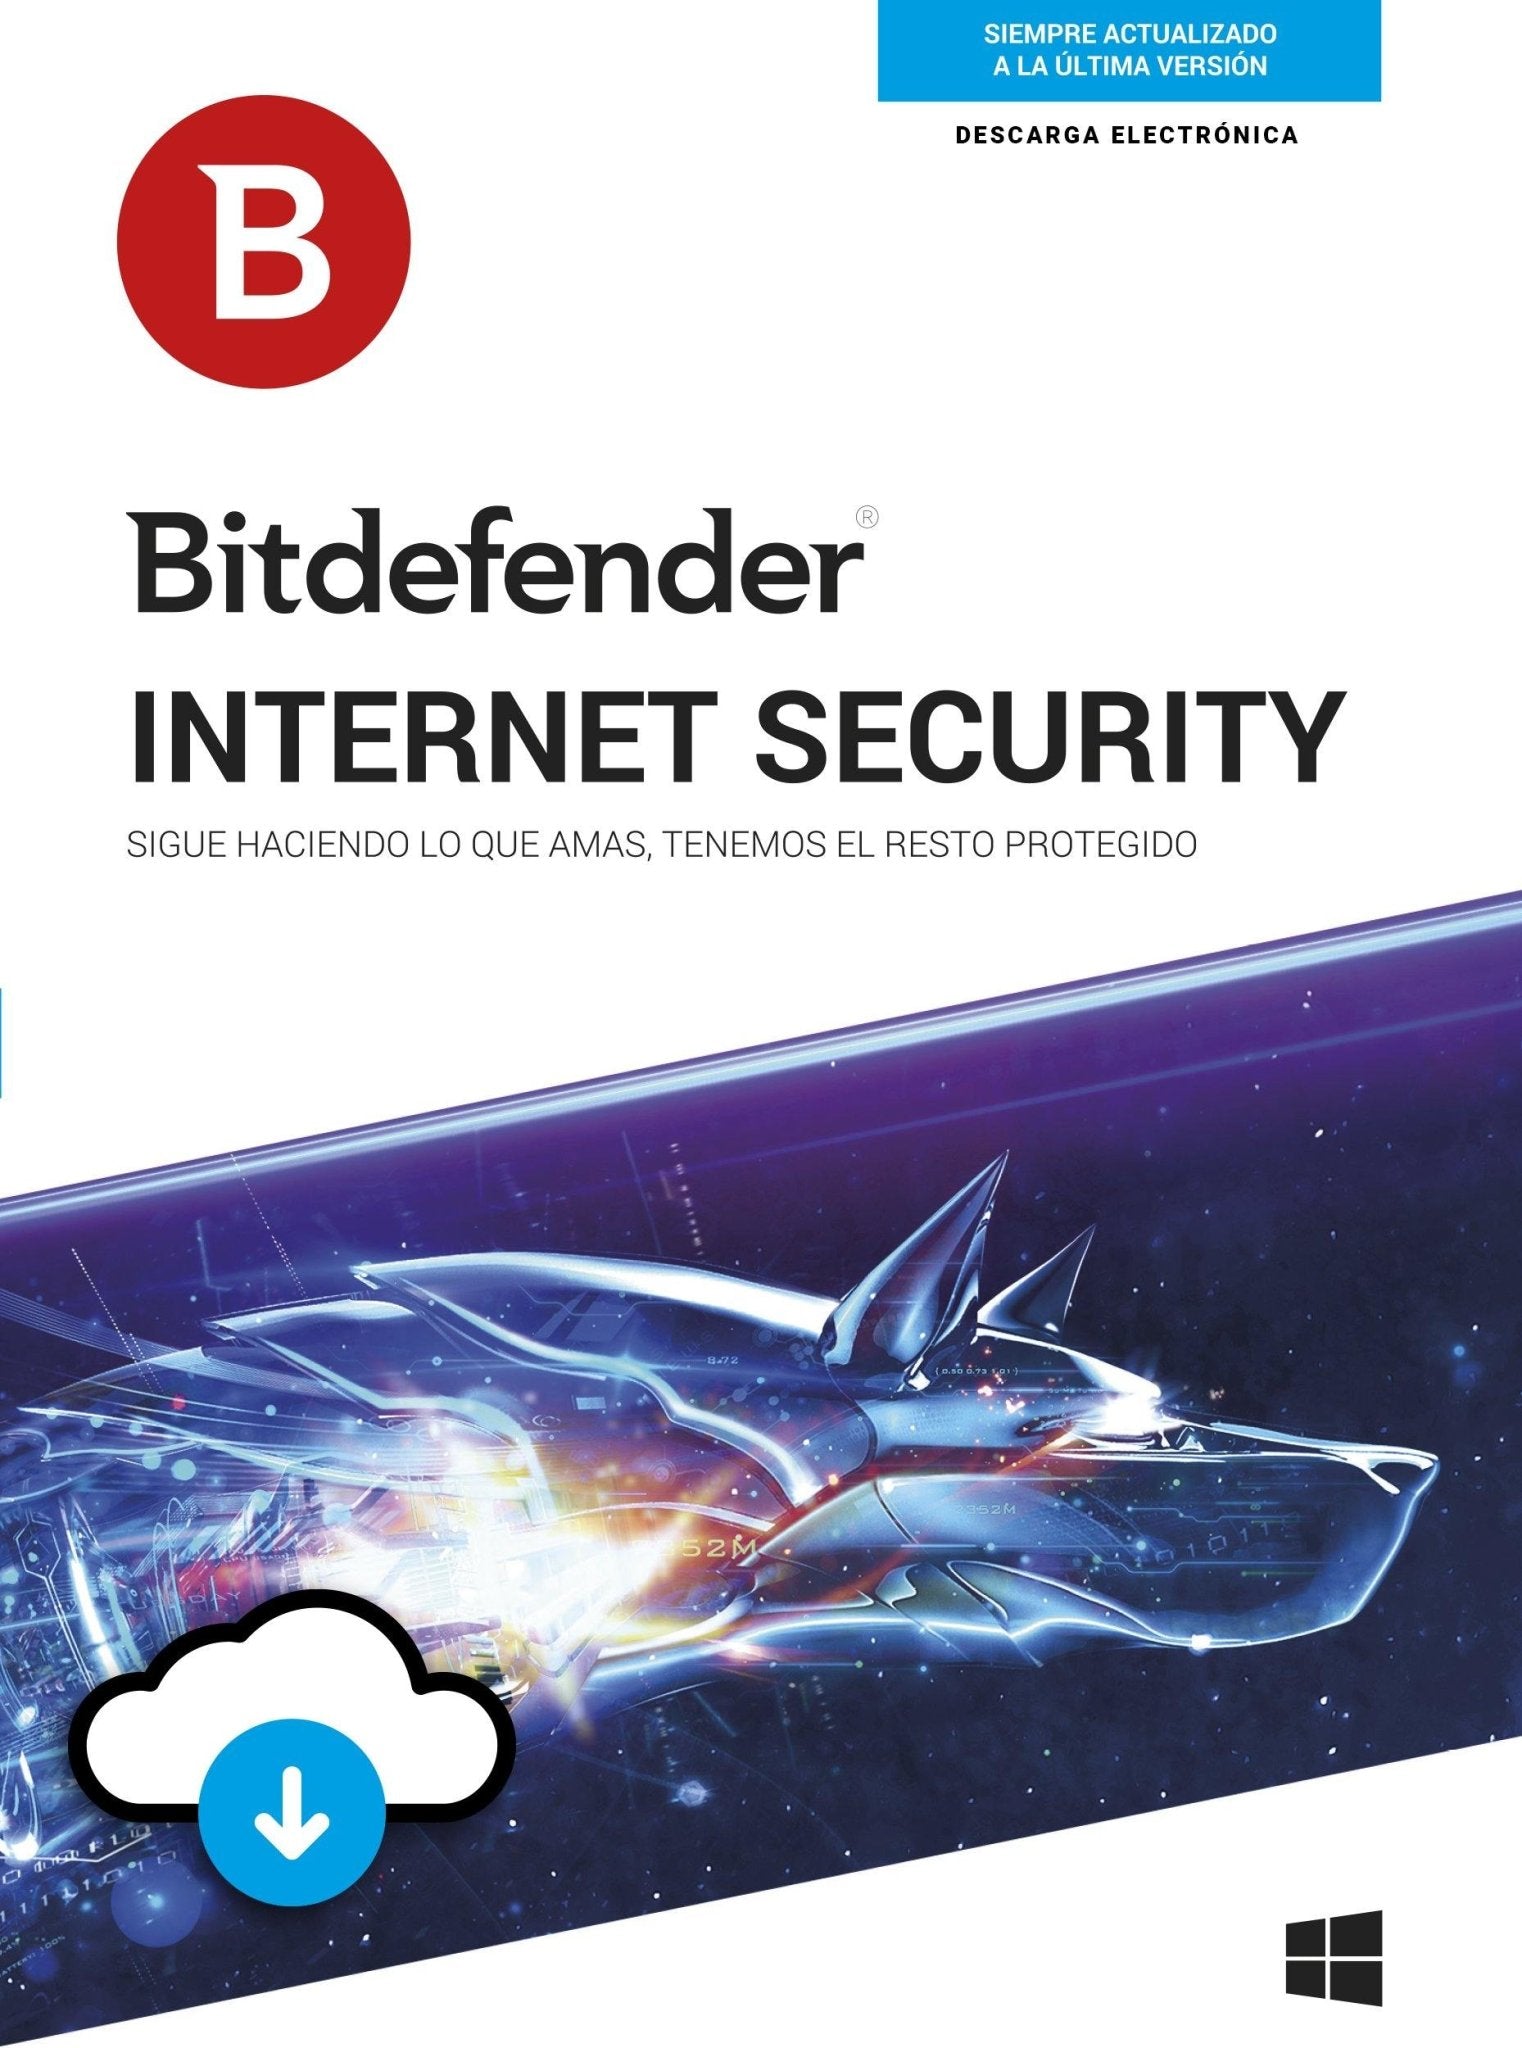 Bitdefender Internet Security 3 AÑOS - NOORHS Latinoamérica, S.A. de C.V.